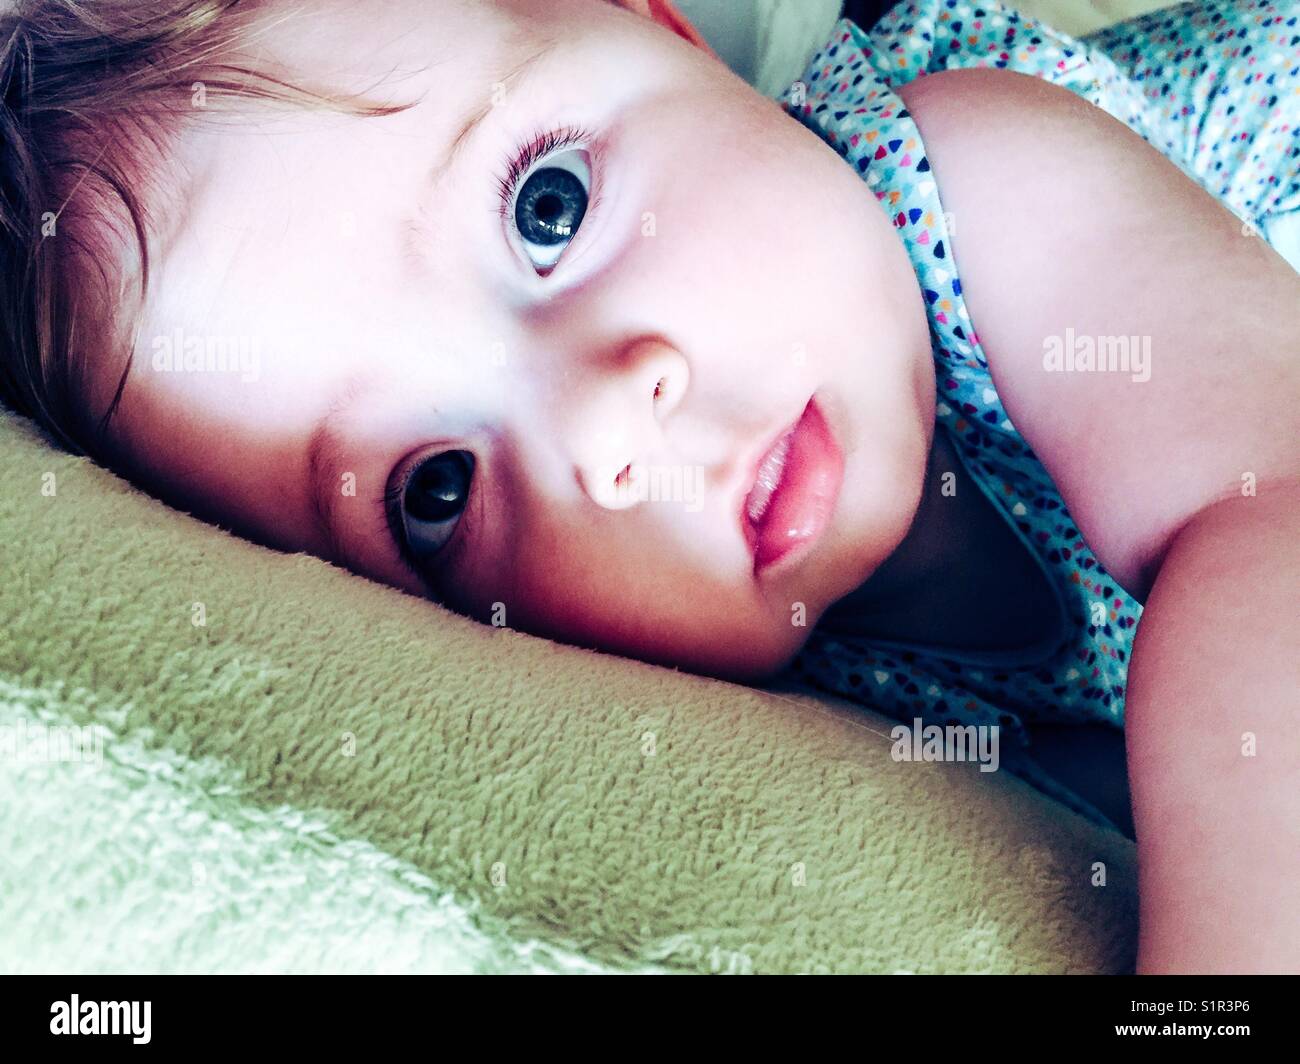 Closeup of baby girl looking at camera Stock Photo